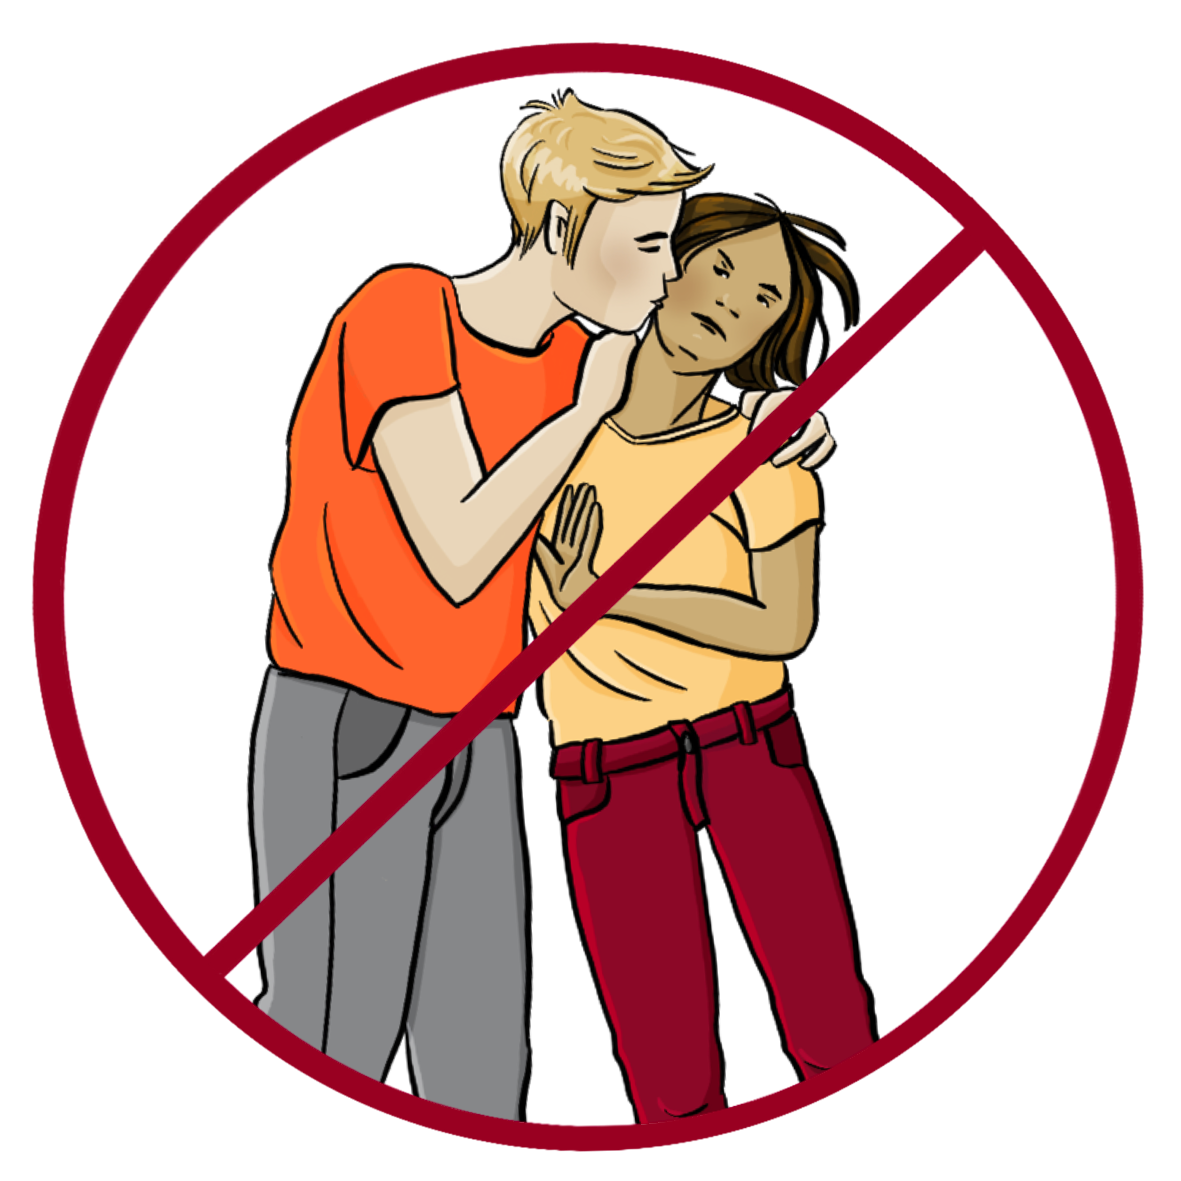 Ein Mann hält eine Frau fest und küsst sie auf die Wange. Die Frau dreht den Kopf weg und versucht, den Mann wegzuschieben. Das Bild ist durchgestrichen. 